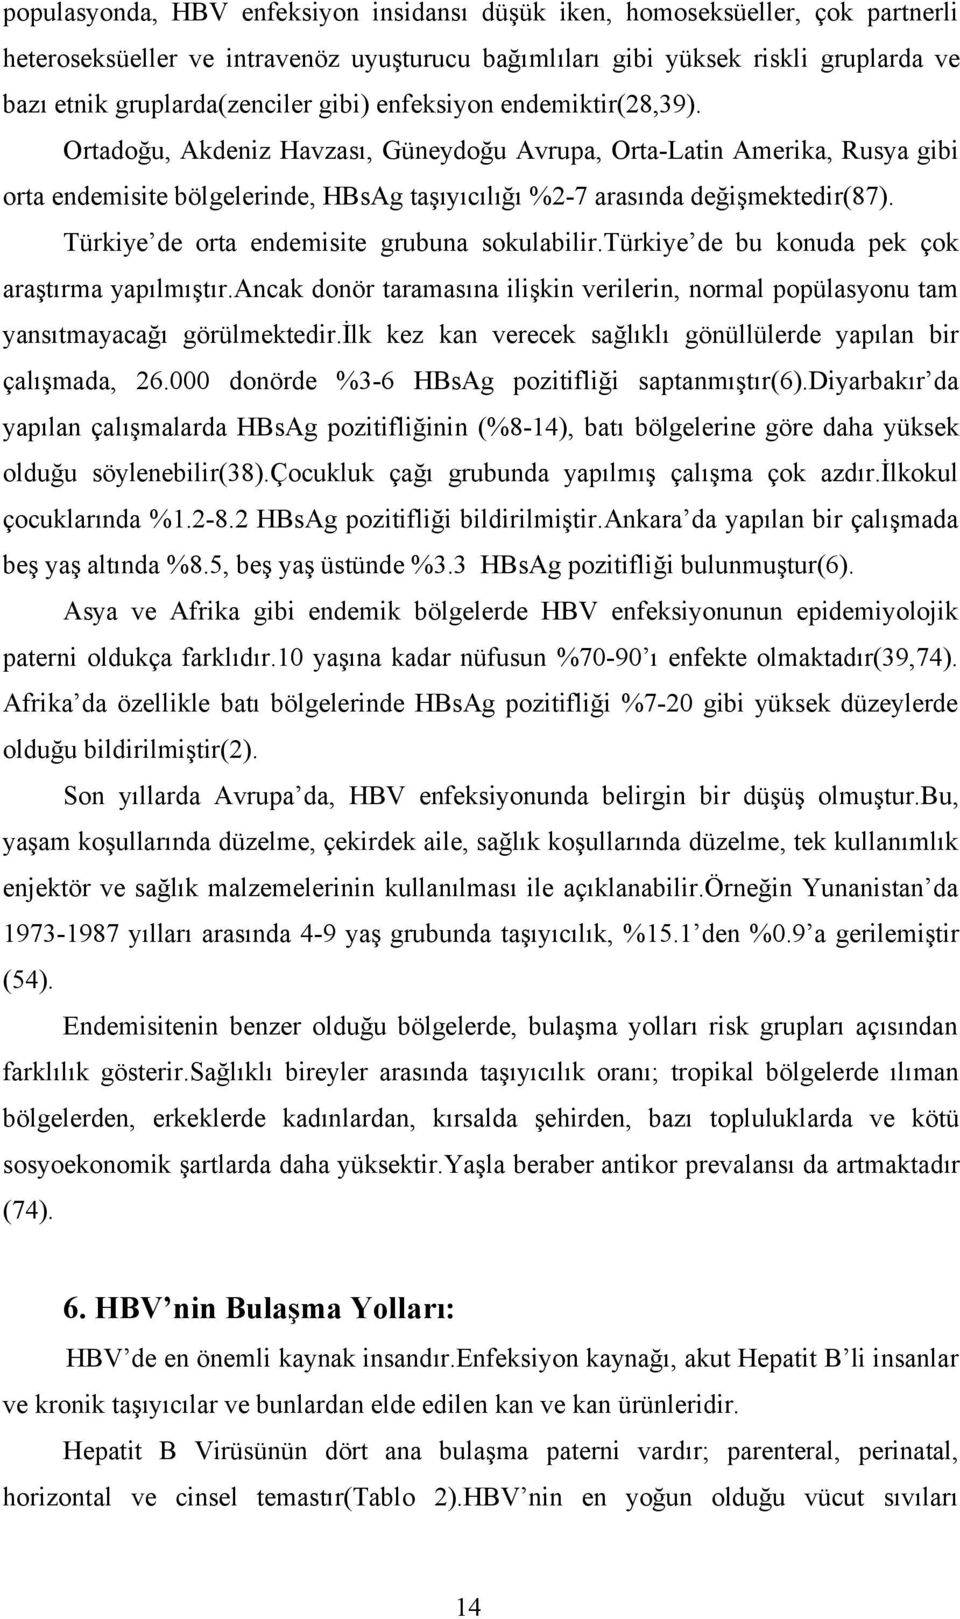 Türkiye de orta endemisite grubuna sokulabilir.türkiye de bu konuda pek çok araştırma yapılmıştır.ancak donör taramasına ilişkin verilerin, normal popülasyonu tam yansıtmayacağı görülmektedir.